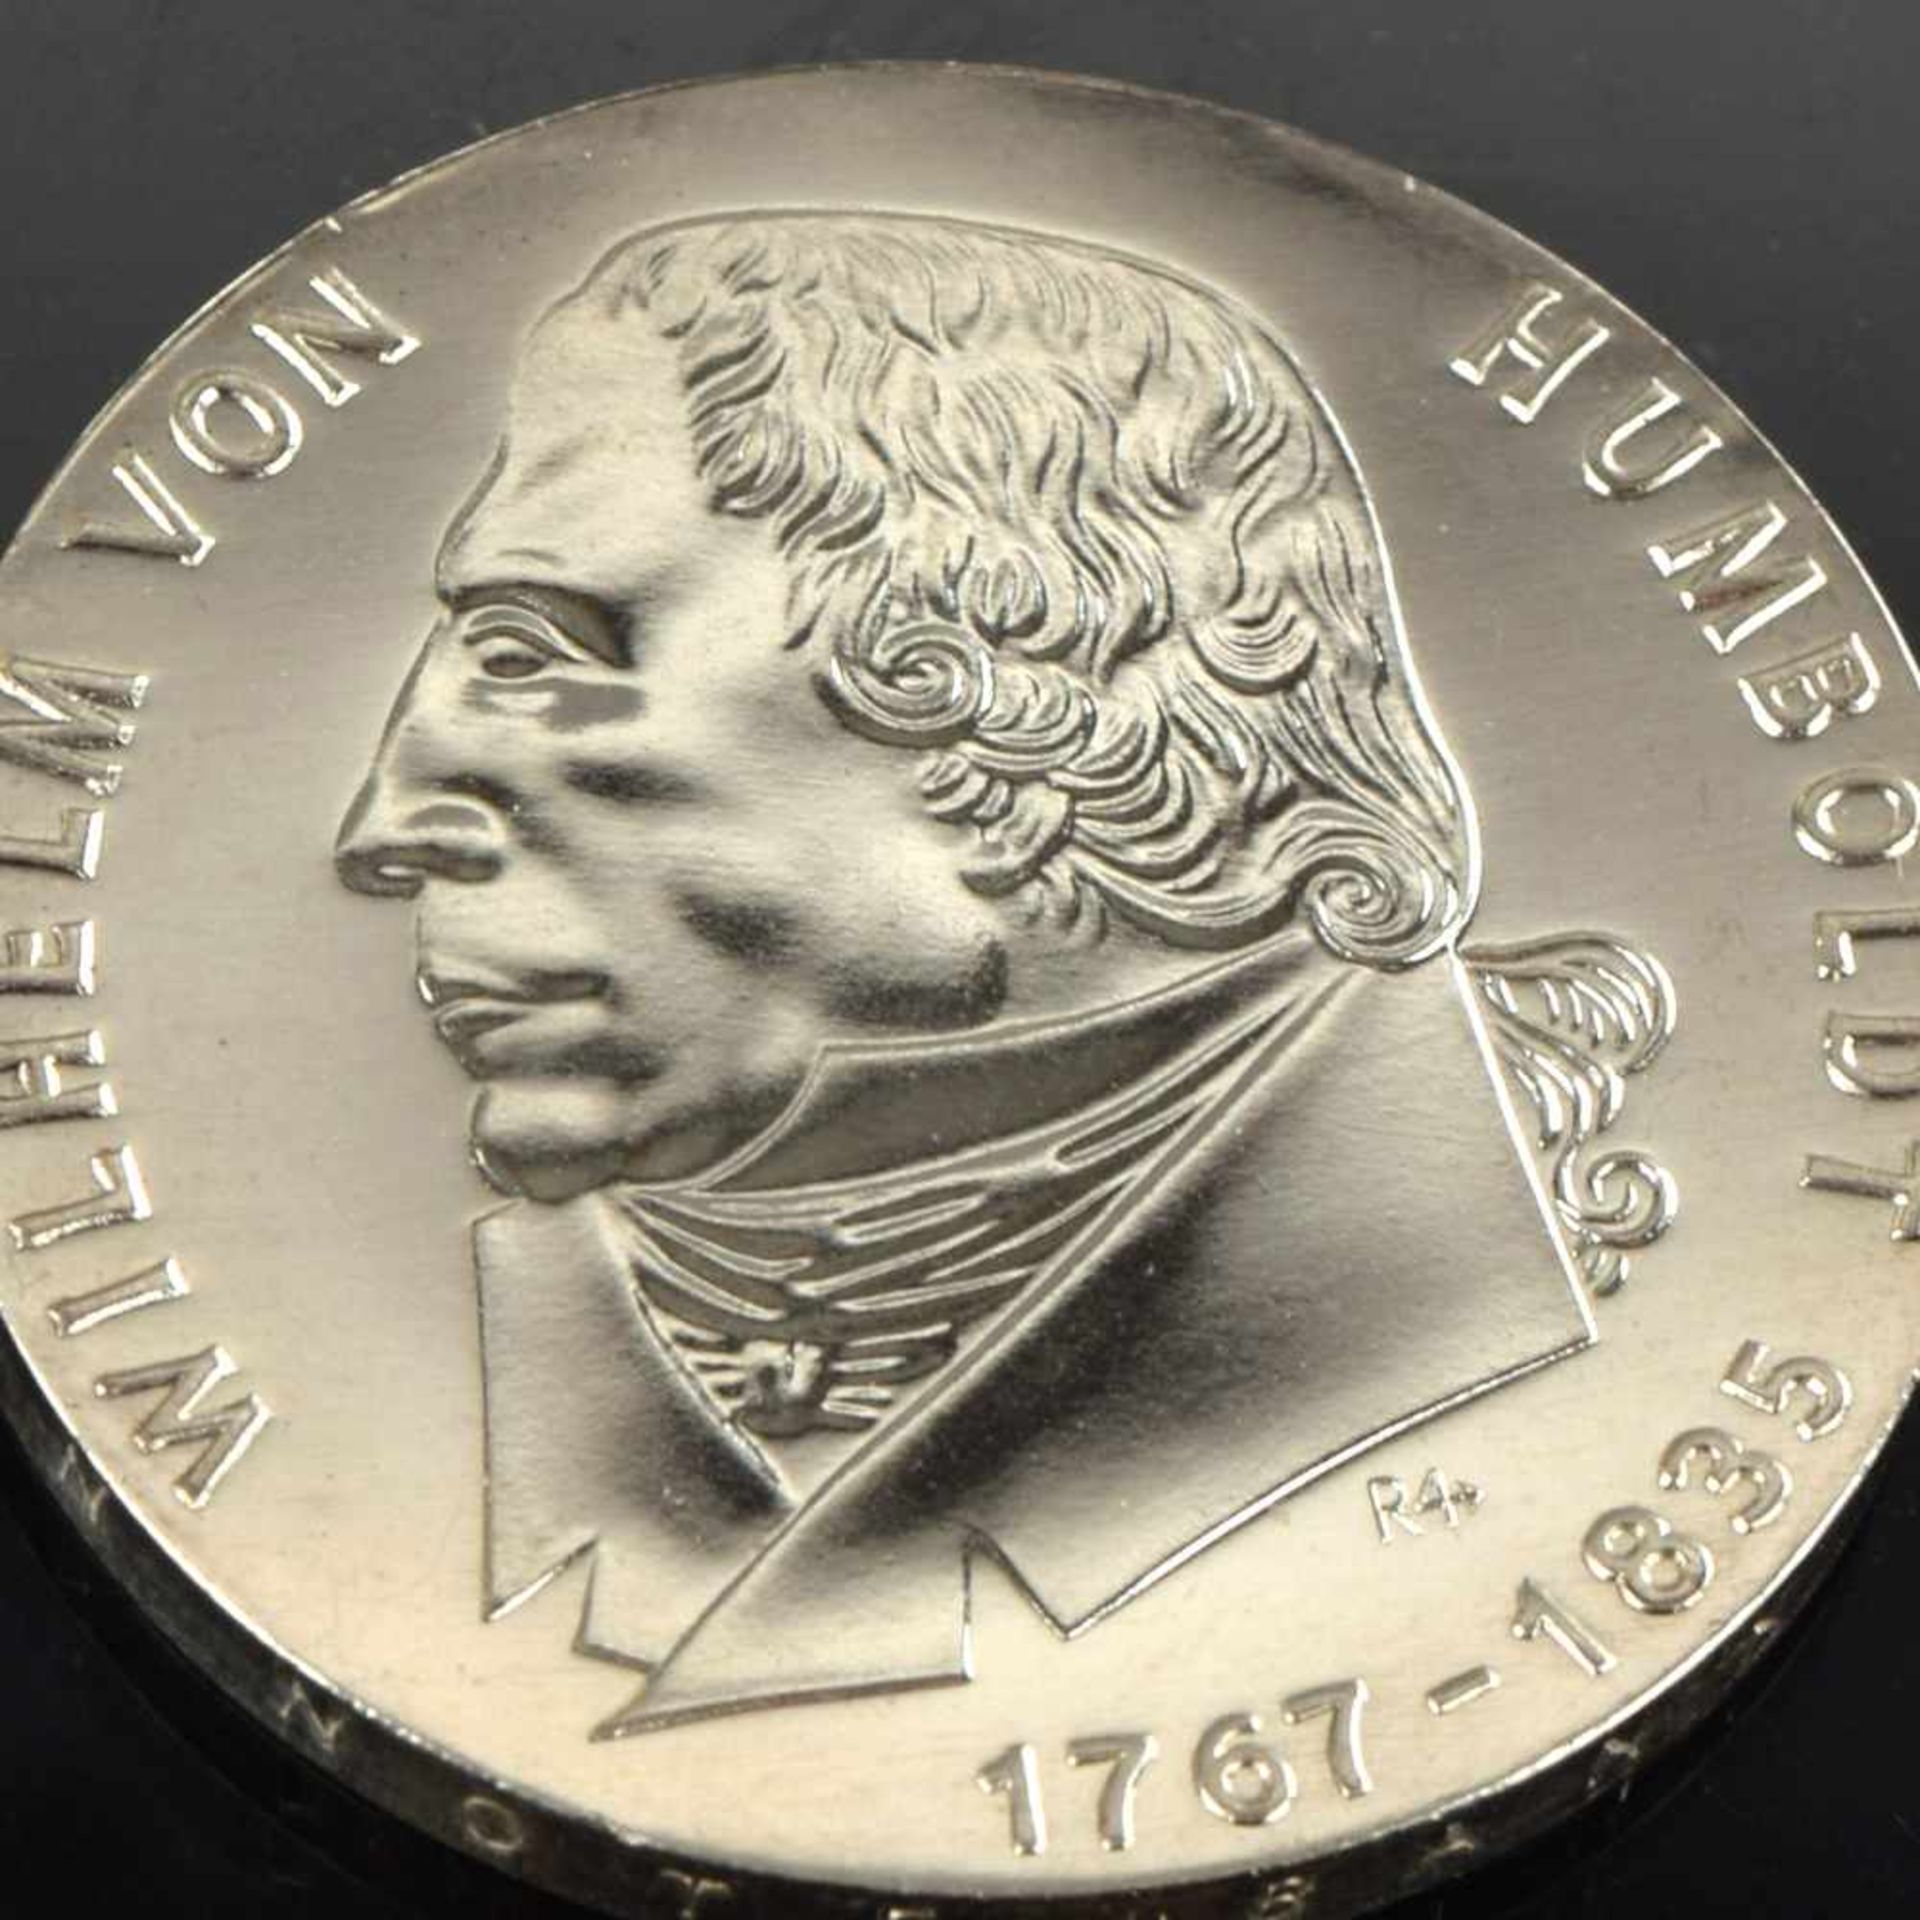 Silbermünze DDR 20 Mark "200. Geburtstag Wilhelm von Humboldt", 1967 (A)- - -23.00 % buyer's premium